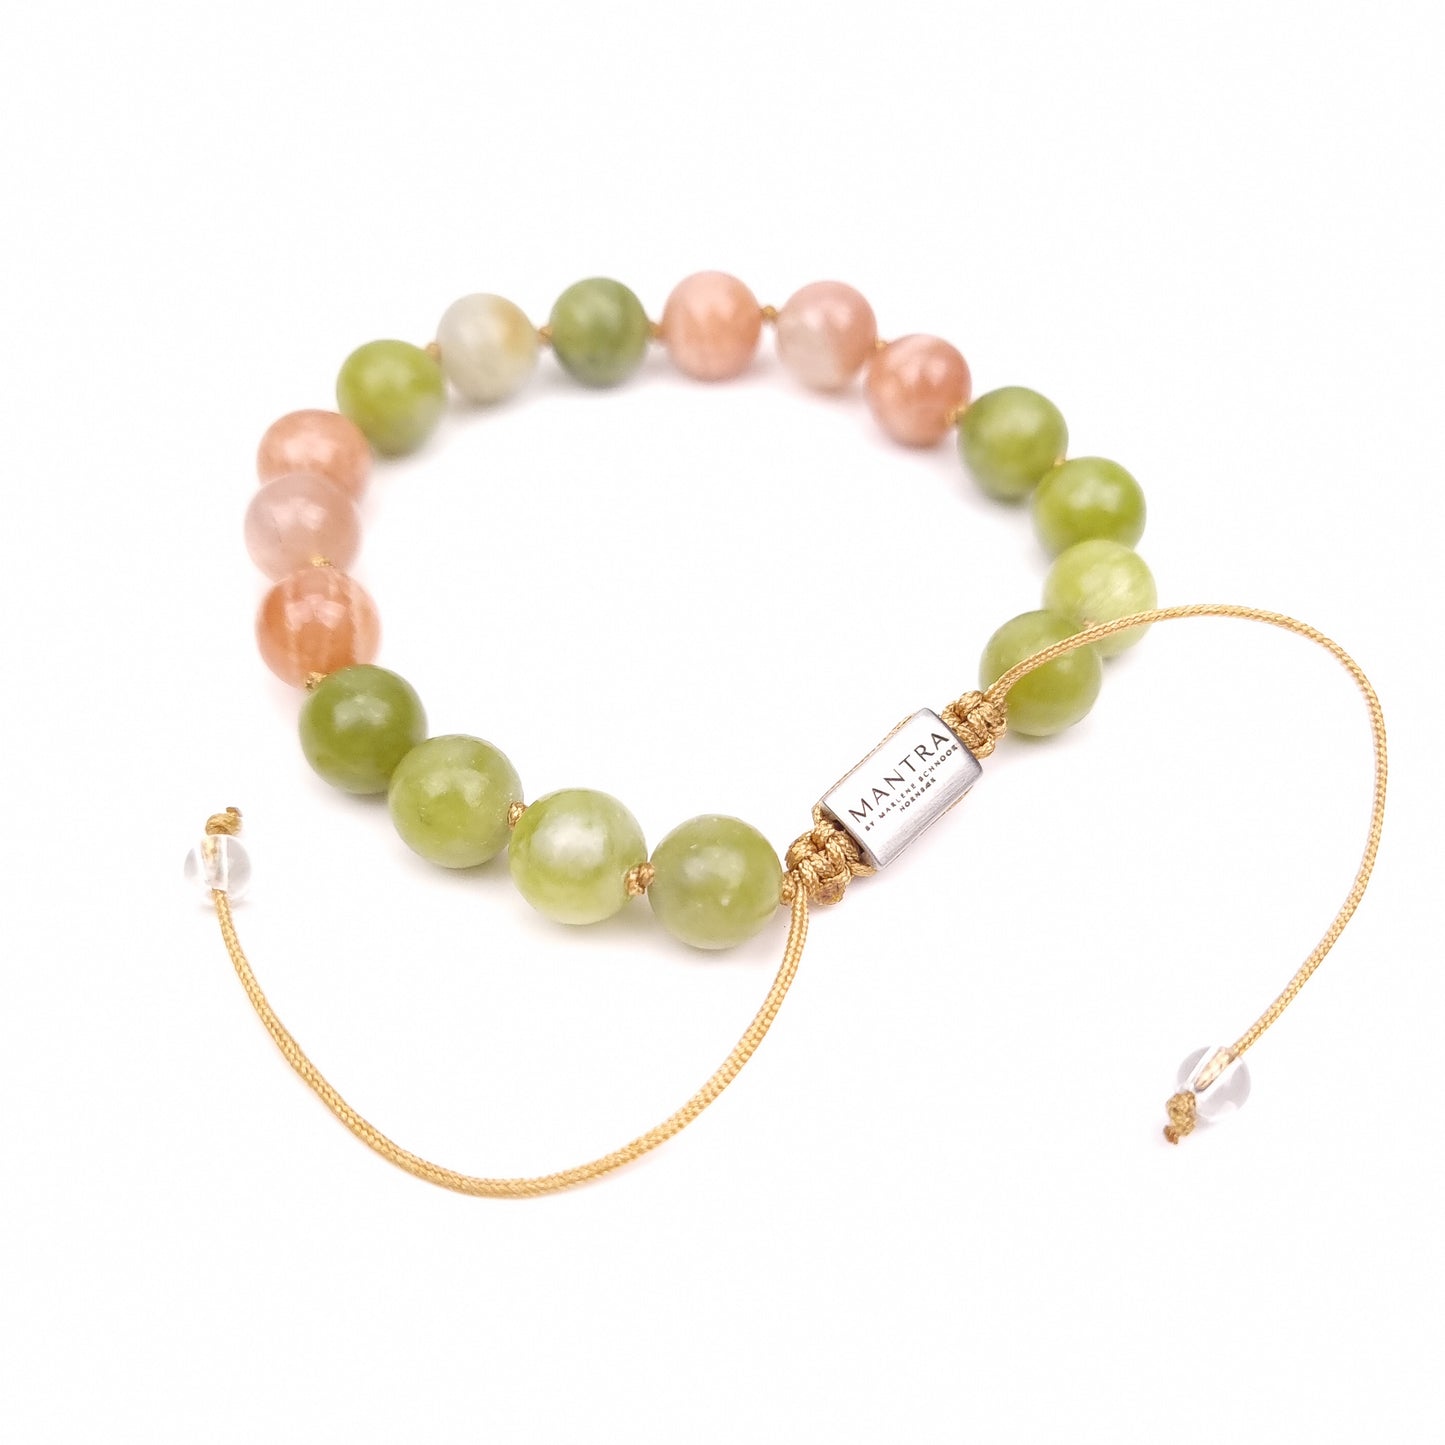 Mantra bracelet - 'I bloom'